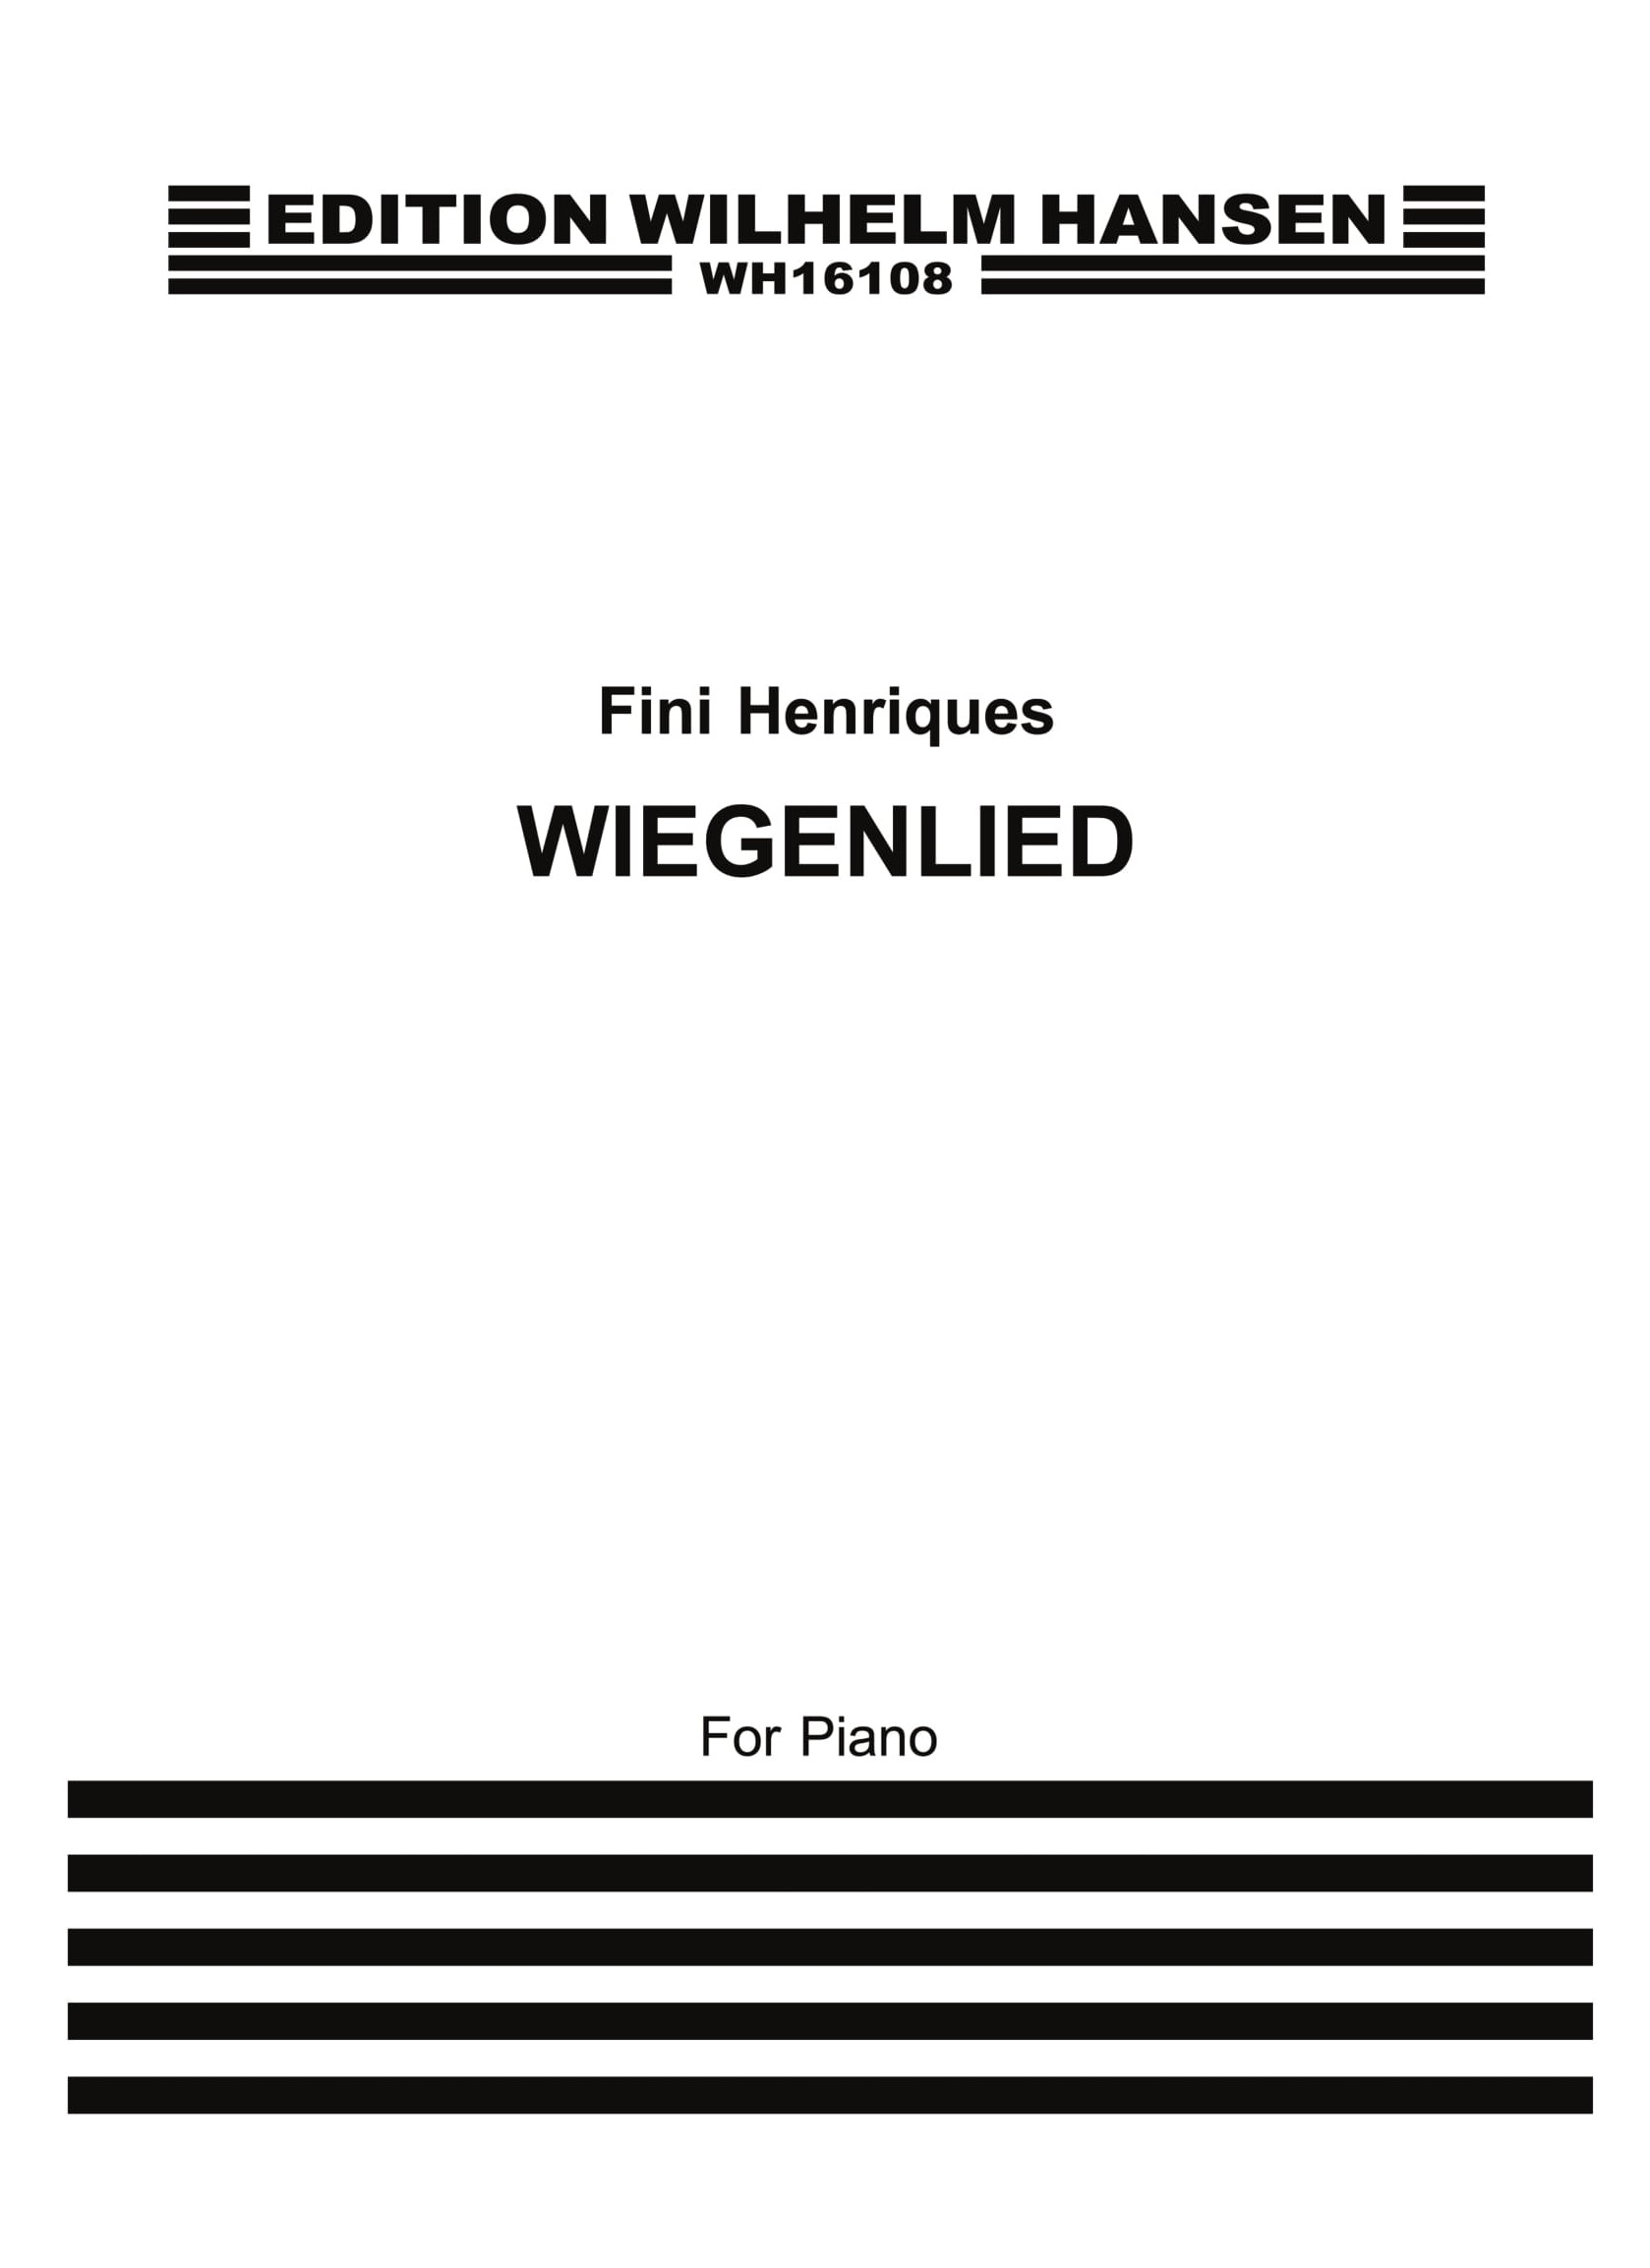 Fini Henriques: Wiegenlied: Piano: Instrumental Work